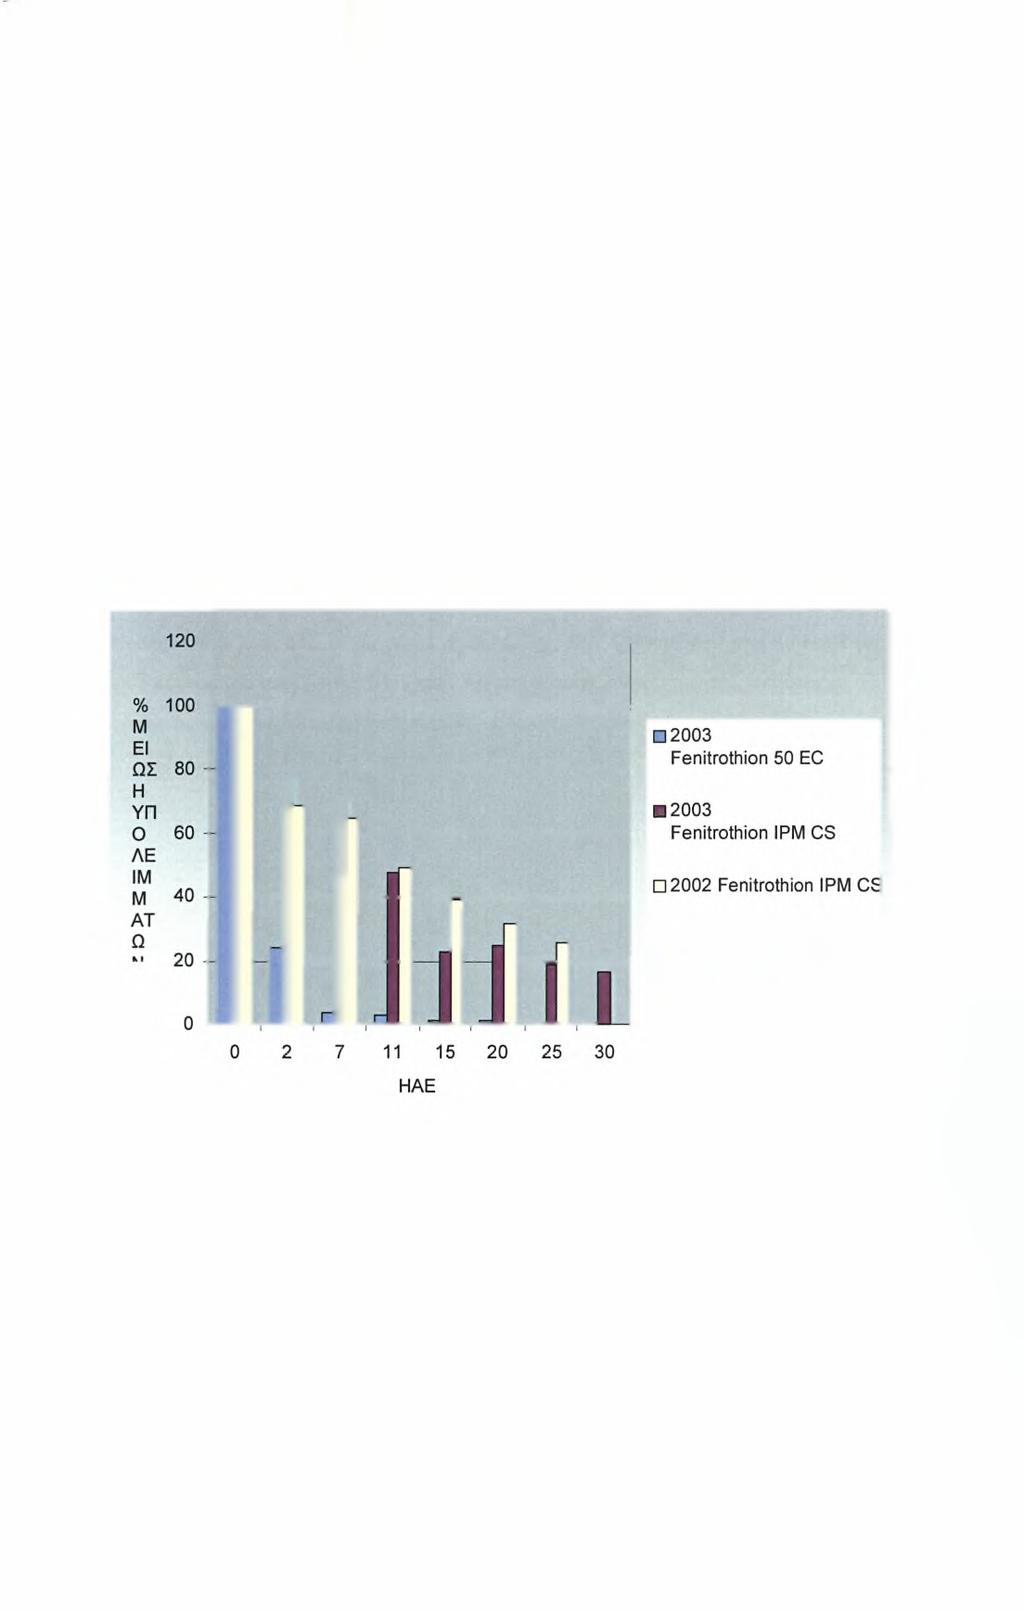 Οι αρχικές συγκεντρώσεις του fenitrothion στα φύλλα που ψεκάστηκαν με το σκεύασμα ΙΡΜ CS ήταν 111 και 103 mg/kg για το 2003 και 2002, αντίστοιχα, ενώ η